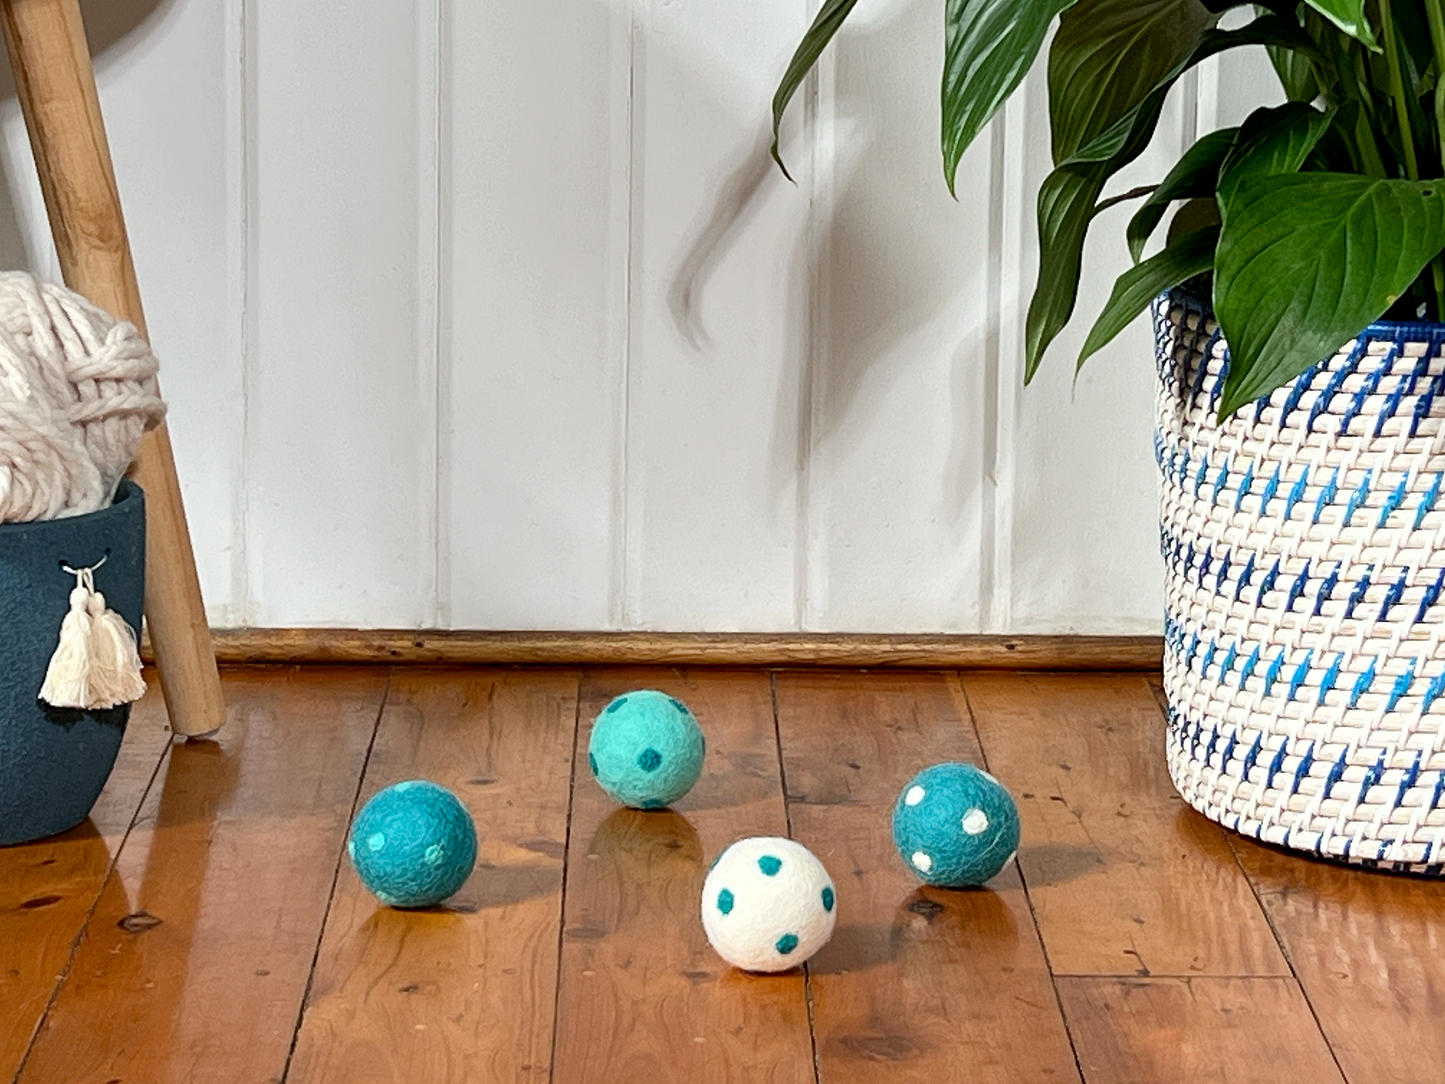 Cat Chaser Toys: Small 5cm Felt Balls (set of 3)